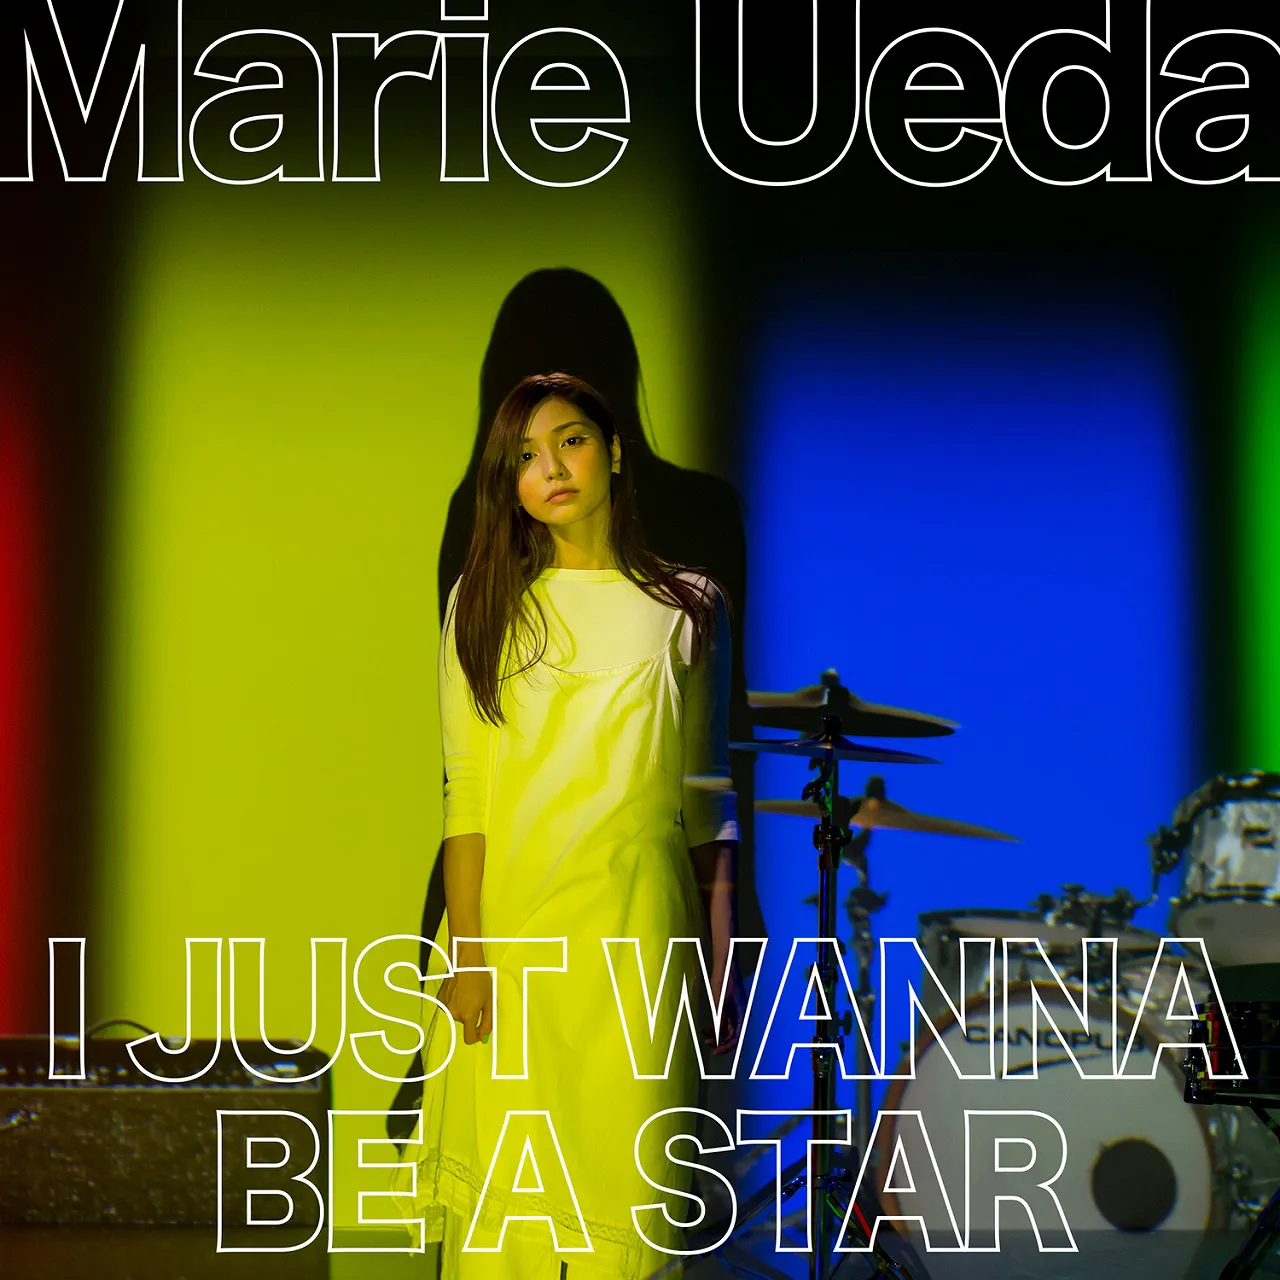 植田真梨恵が25時間超の生配信を終え、新曲「I JUST WANNA BE A STAR」のMVを公開した